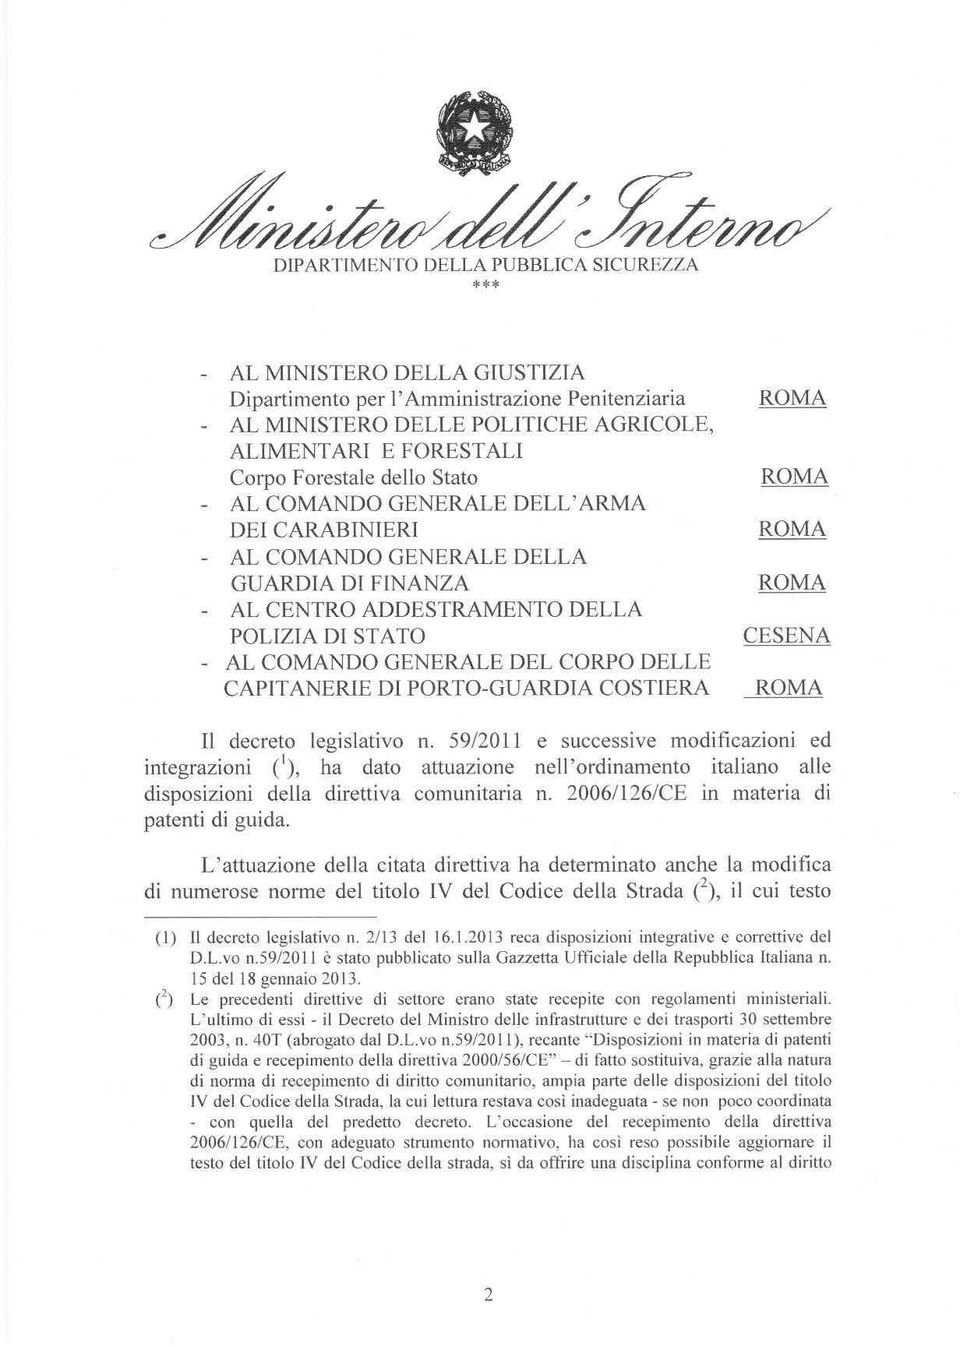 ROMA CESENA ROMA Il decreto legislativo n. 5912011 e successive modificazioni ed integrazioni ('), ha dato attuazione nell'ordinamento italiano alle disposizioni della direttiva comunitaria n.